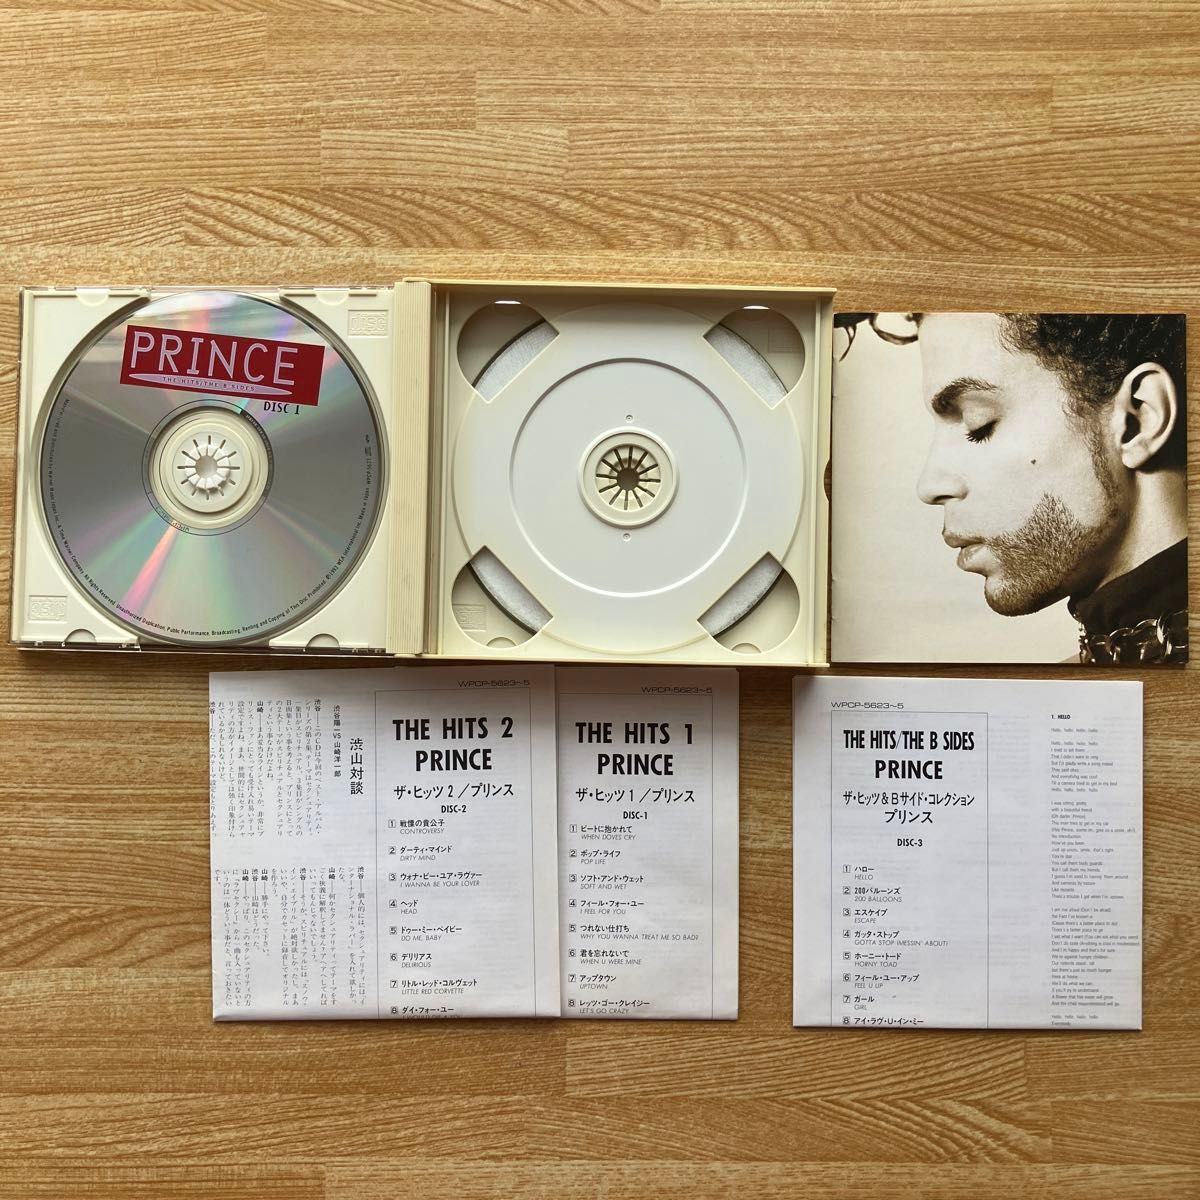 プリンス Prince / ザ・ヒッツ＆Bサイド・コレクション 国内盤 帯付 歌詞・対訳付